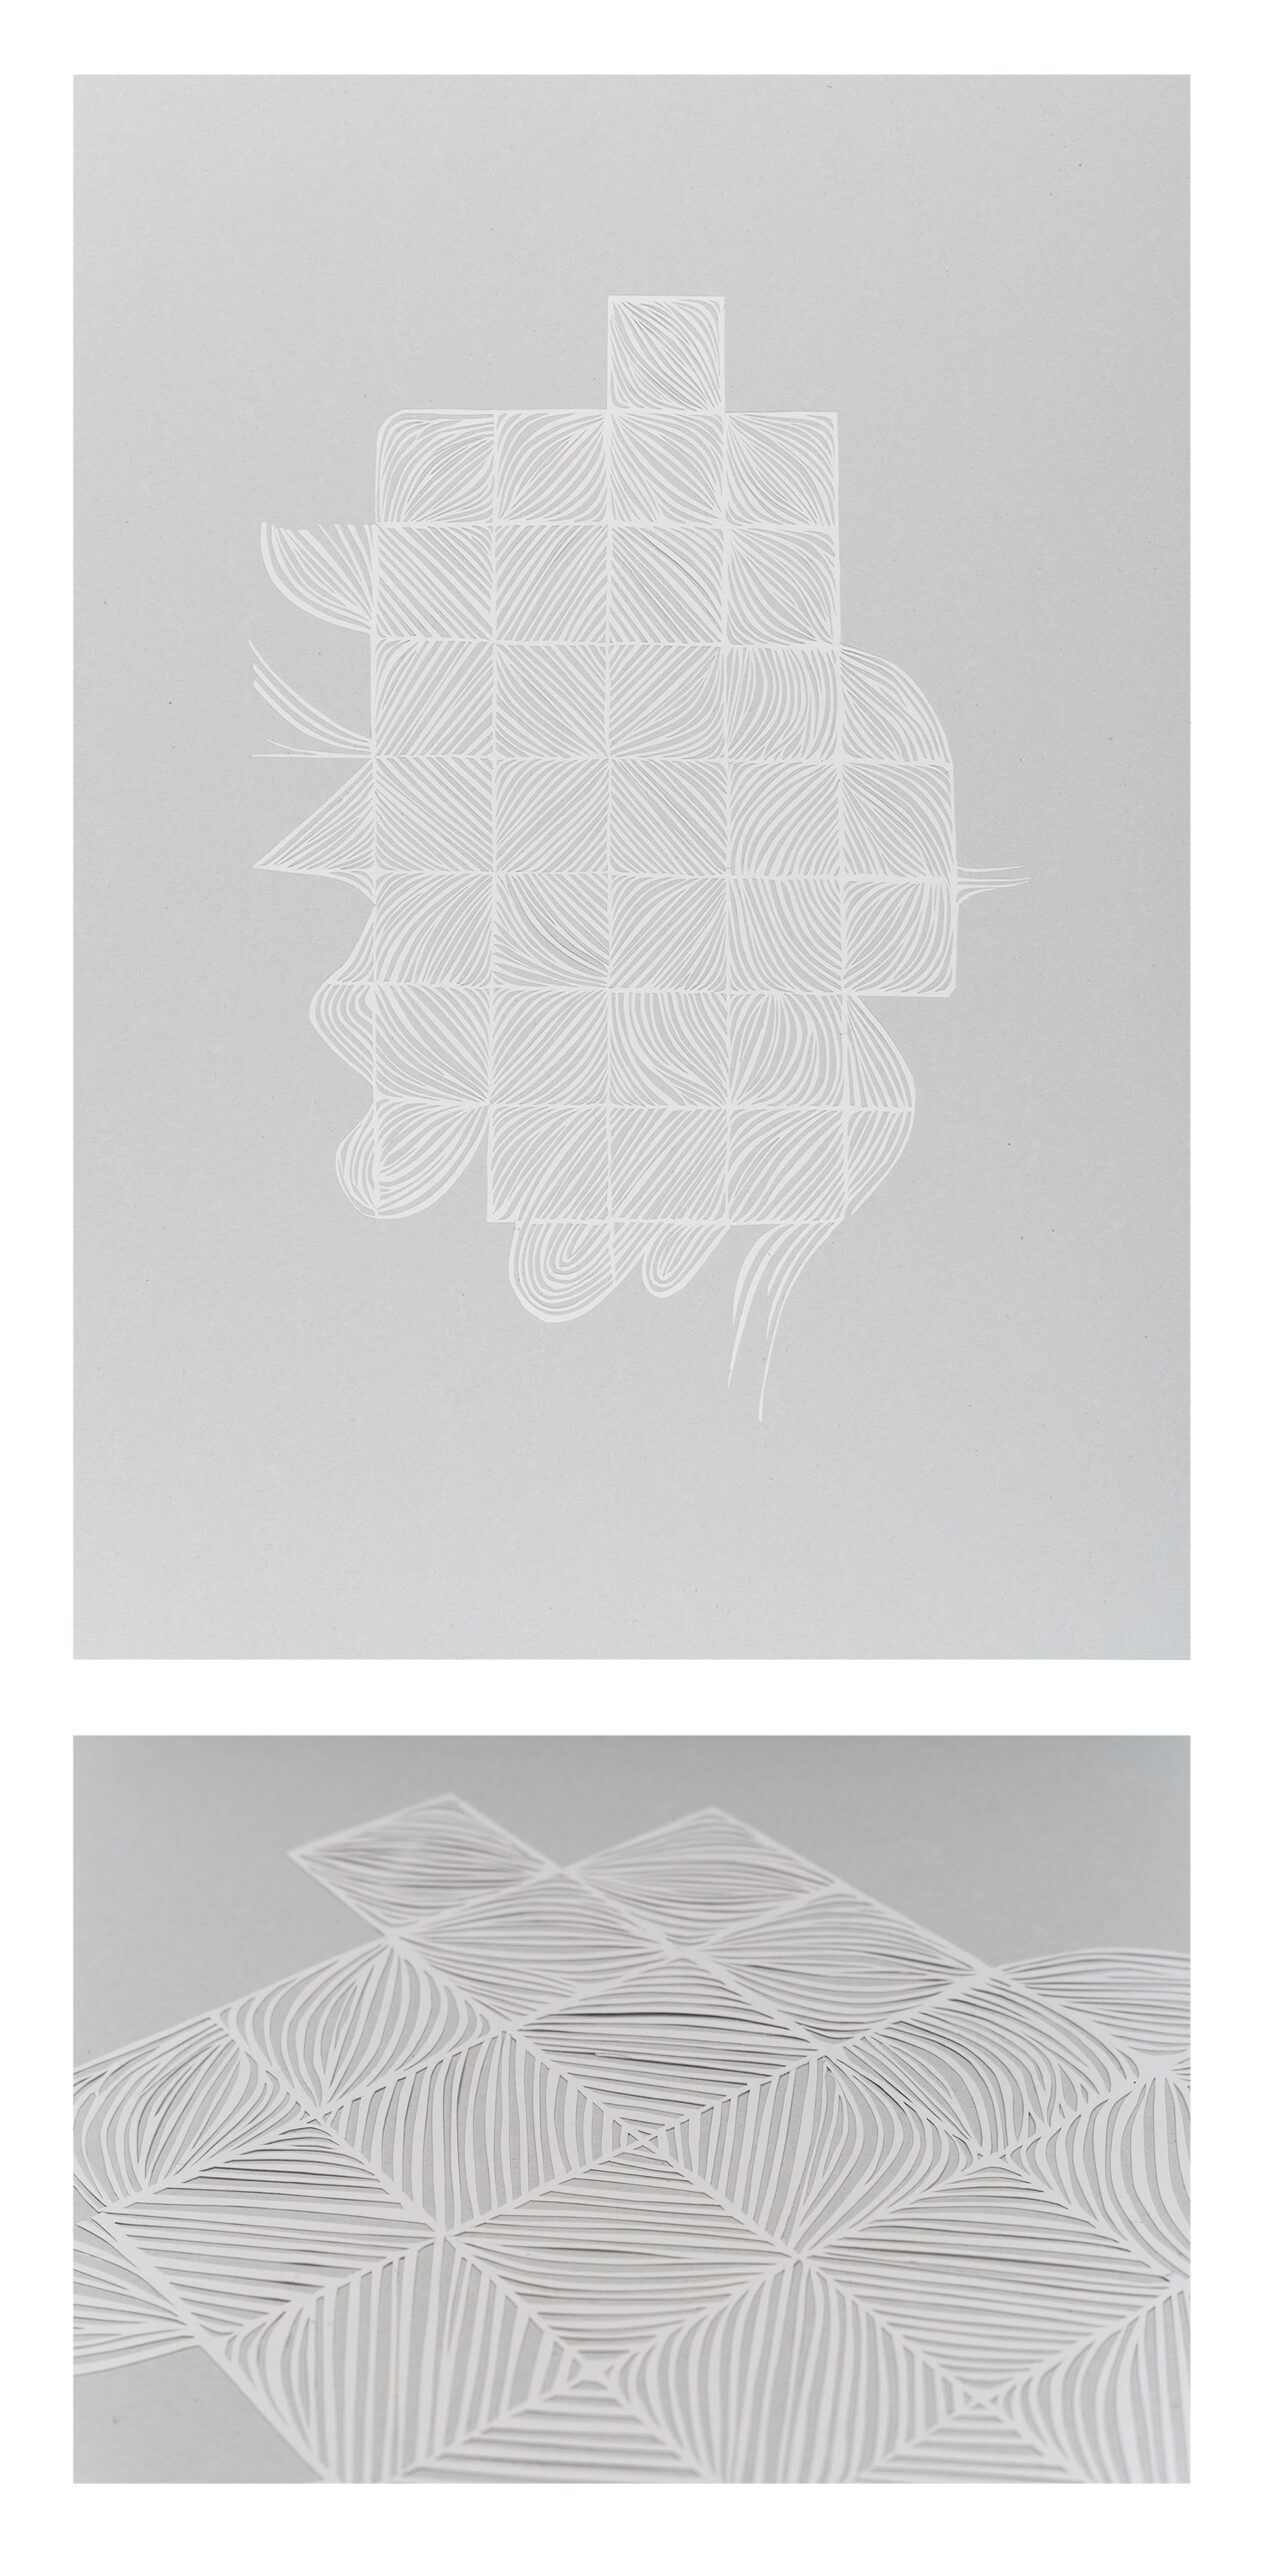 Praca przedstawia formę złożoną z ażurowych ponacinanych prostokątów, która na obrzeżach przechodzi w bardziej organiczne kształty, całość jest wycięta z białego papieru i przyklejona na szary bristol.